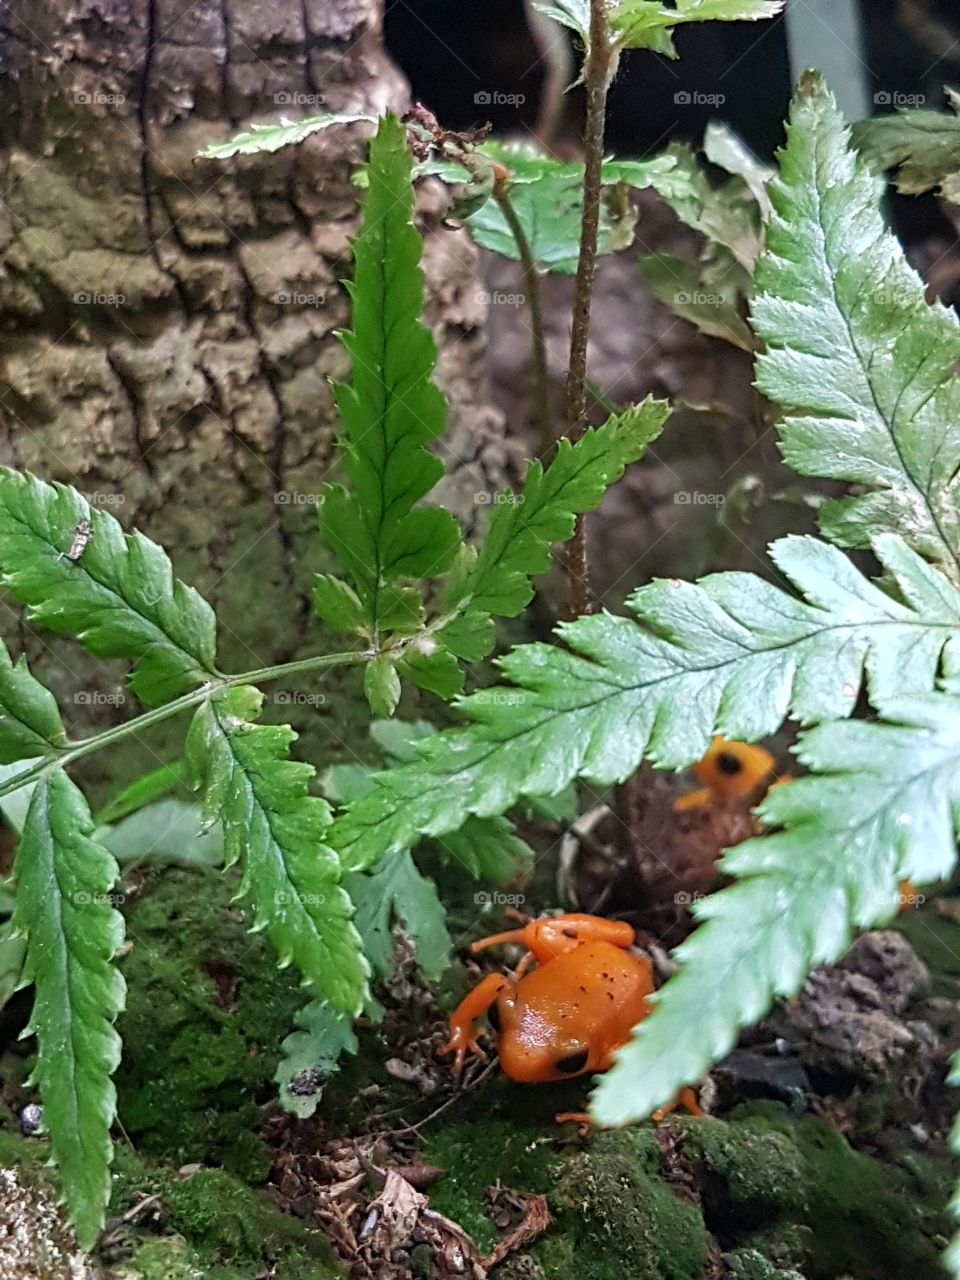 Little, orange frogs amongs plants in a terrarium